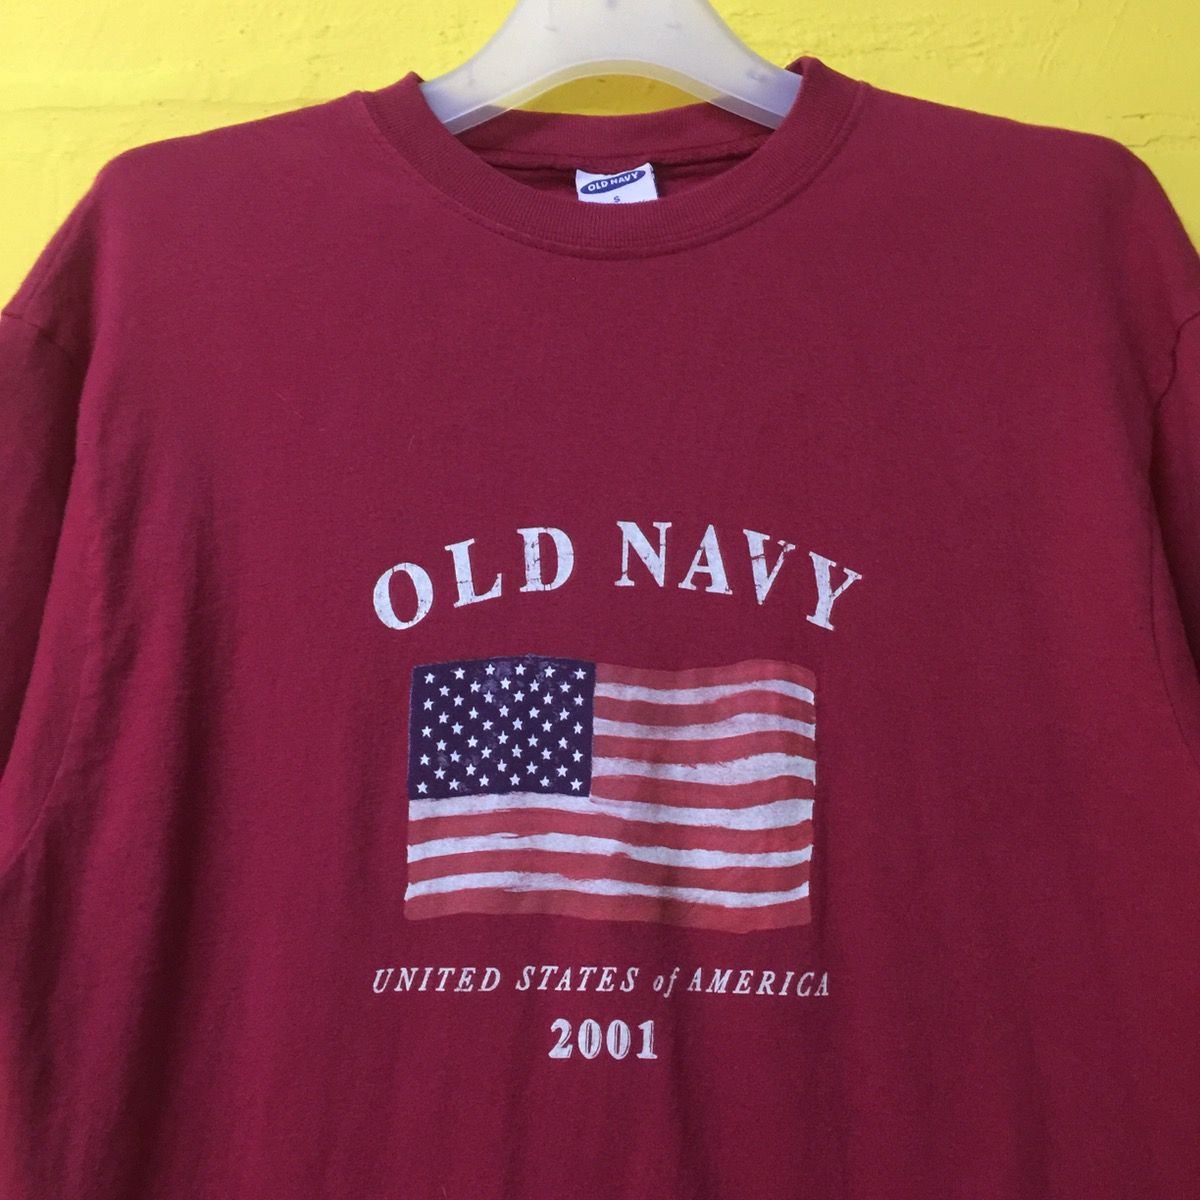 Vintage 2001 Old Navy USA Flag tee